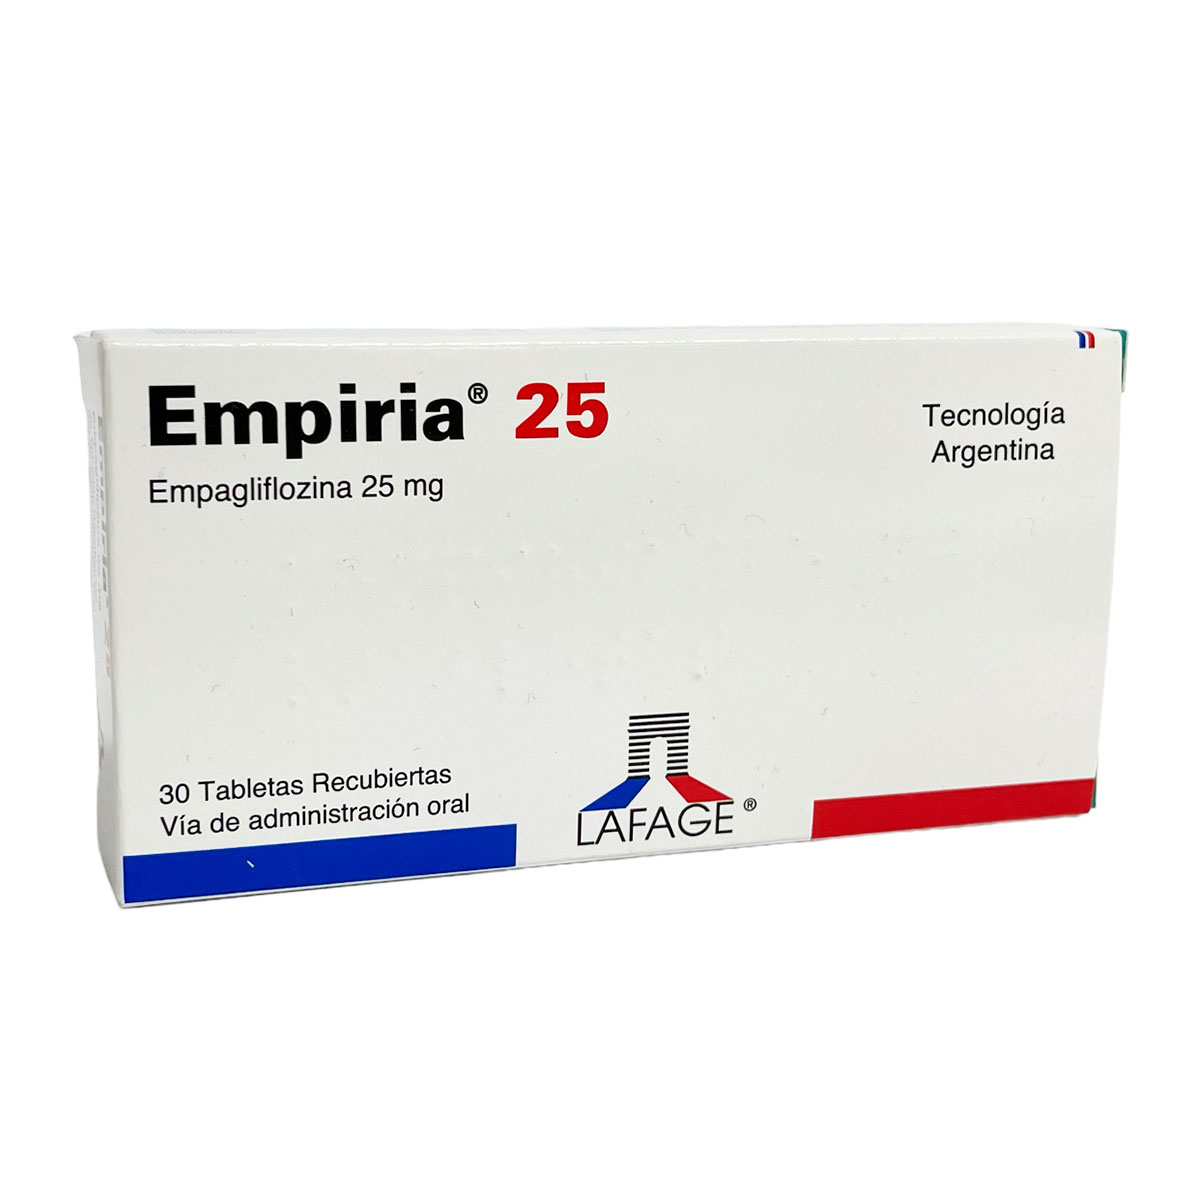 Empiria 25®